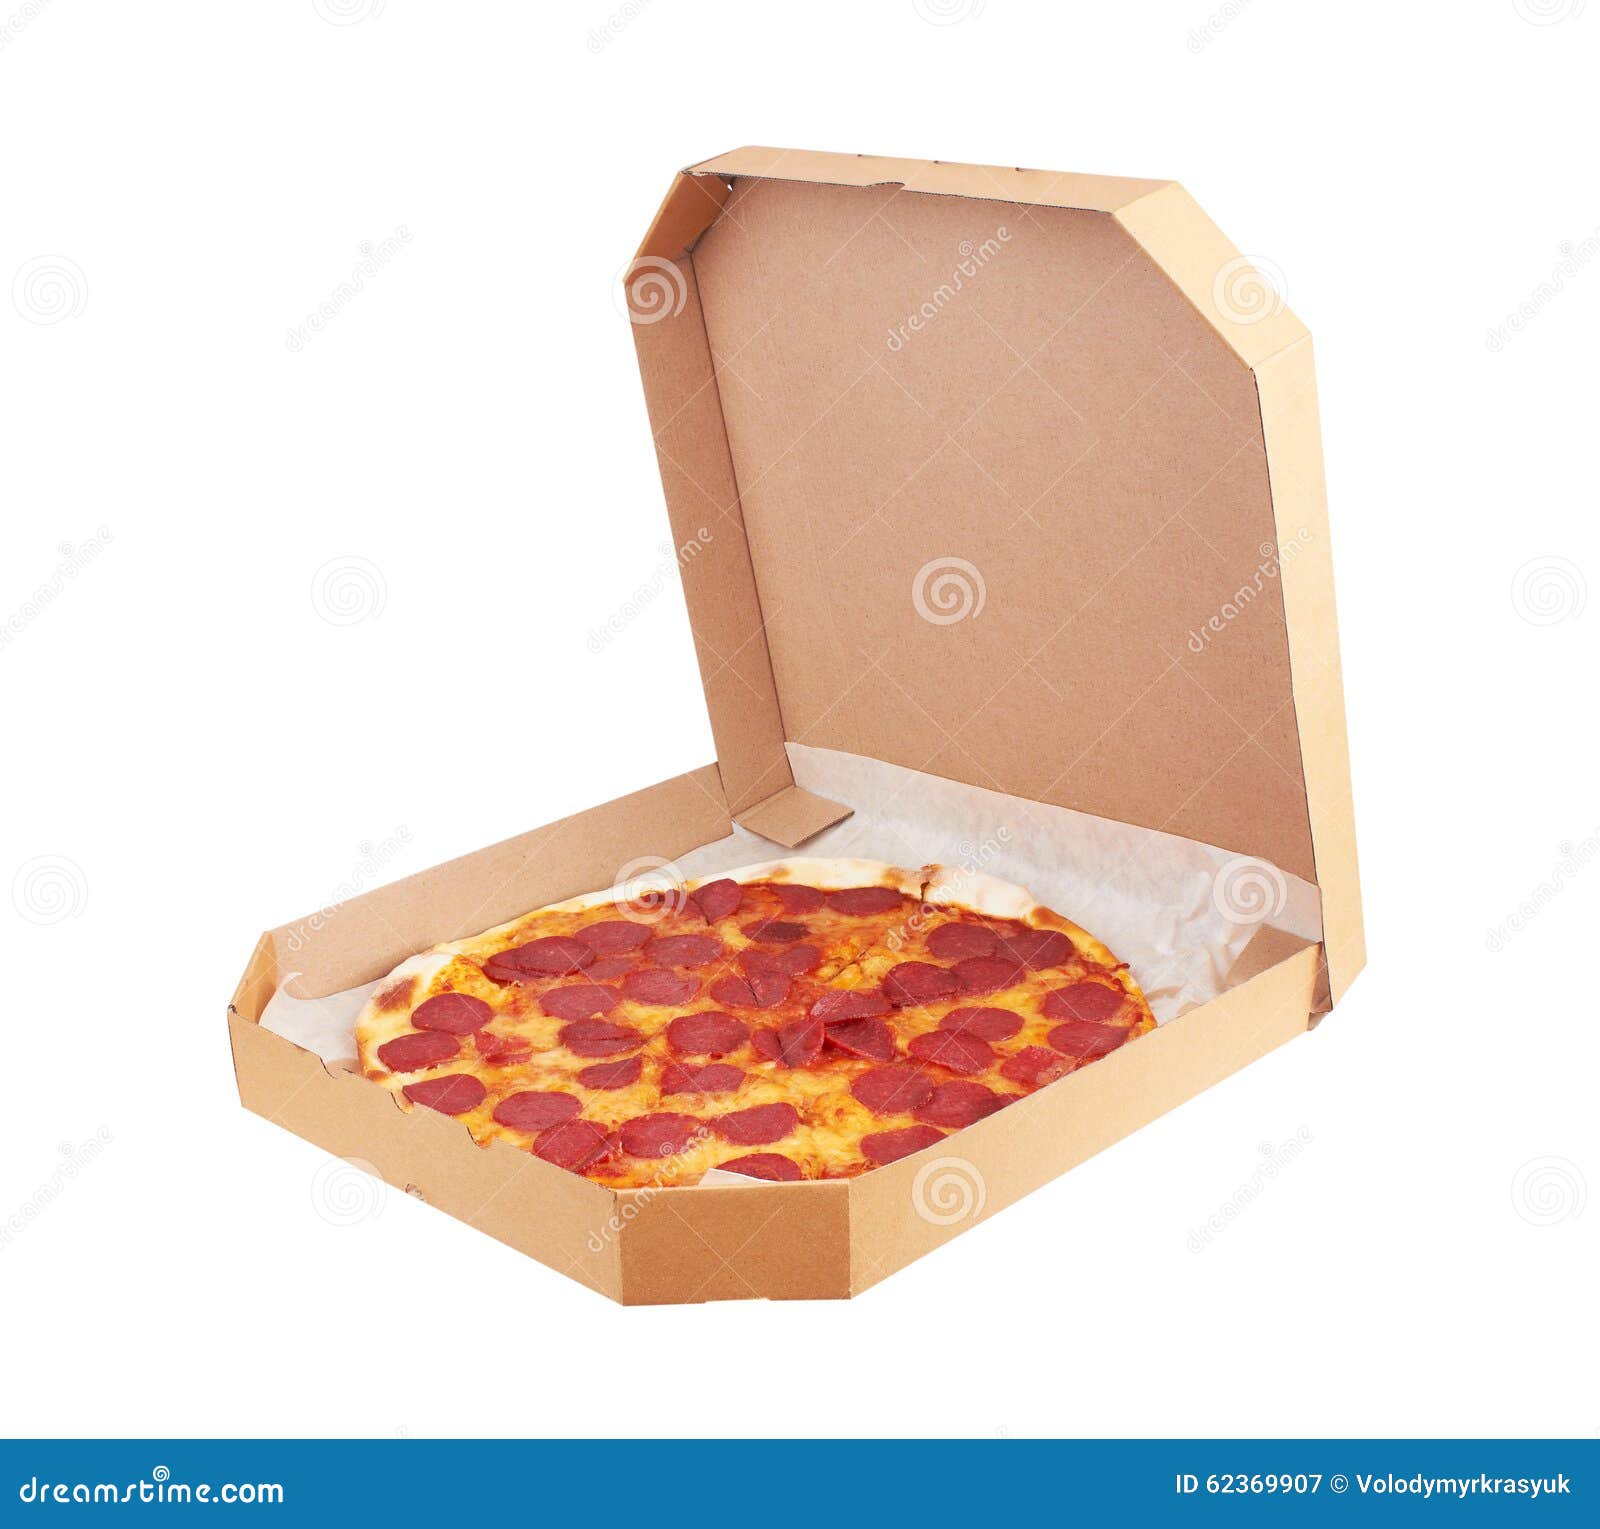 фото пепперони пицца в коробке фото 12